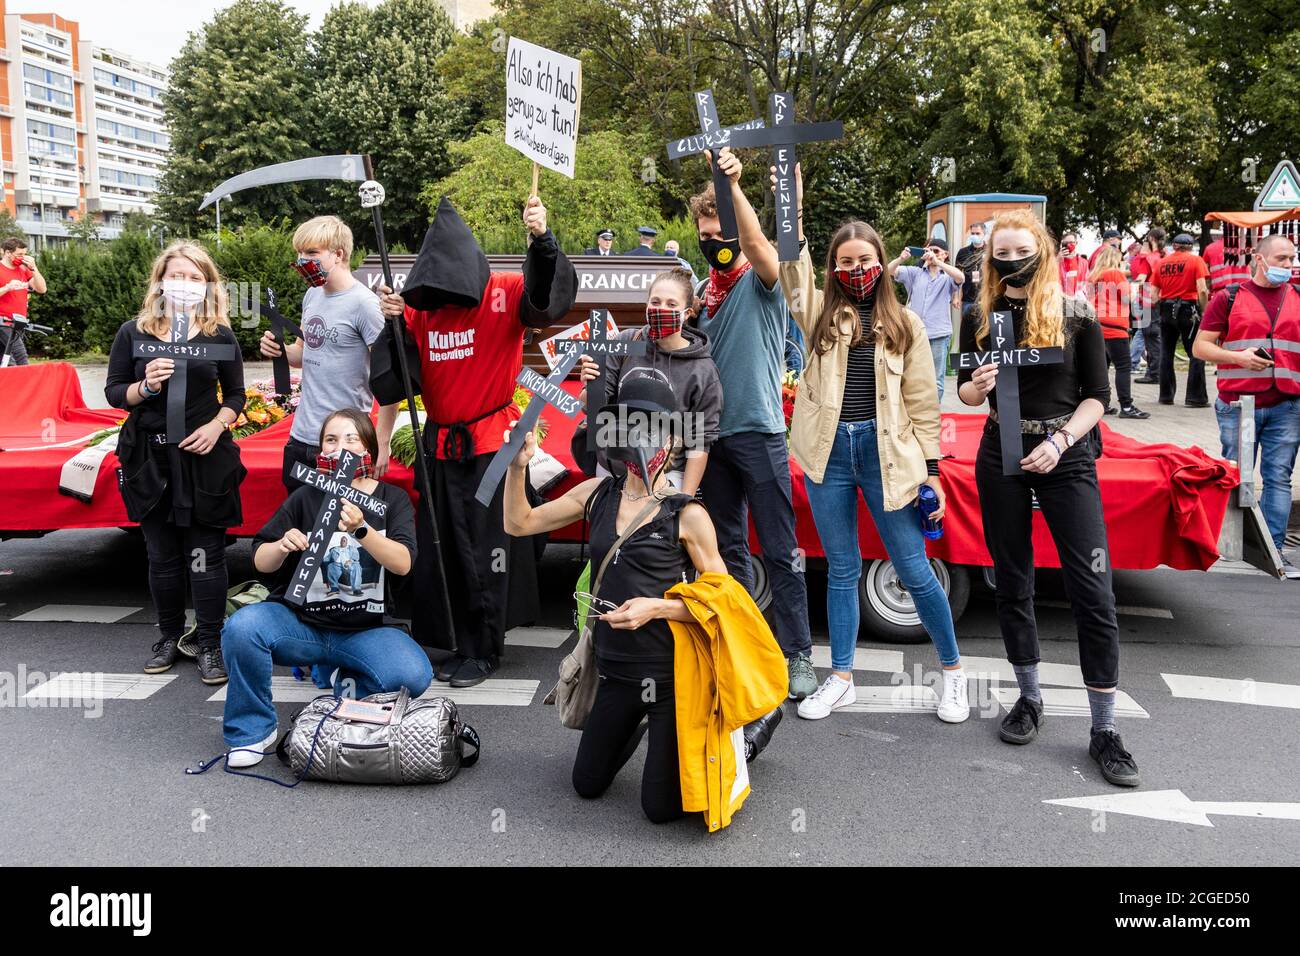 Berlino, Germania. 9 settembre 2020. Red Alert protesta contro le persone colpite dalla chiusura di organizzazioni culturali ed eventi a causa della crisi del Coronavirus. Foto Stock